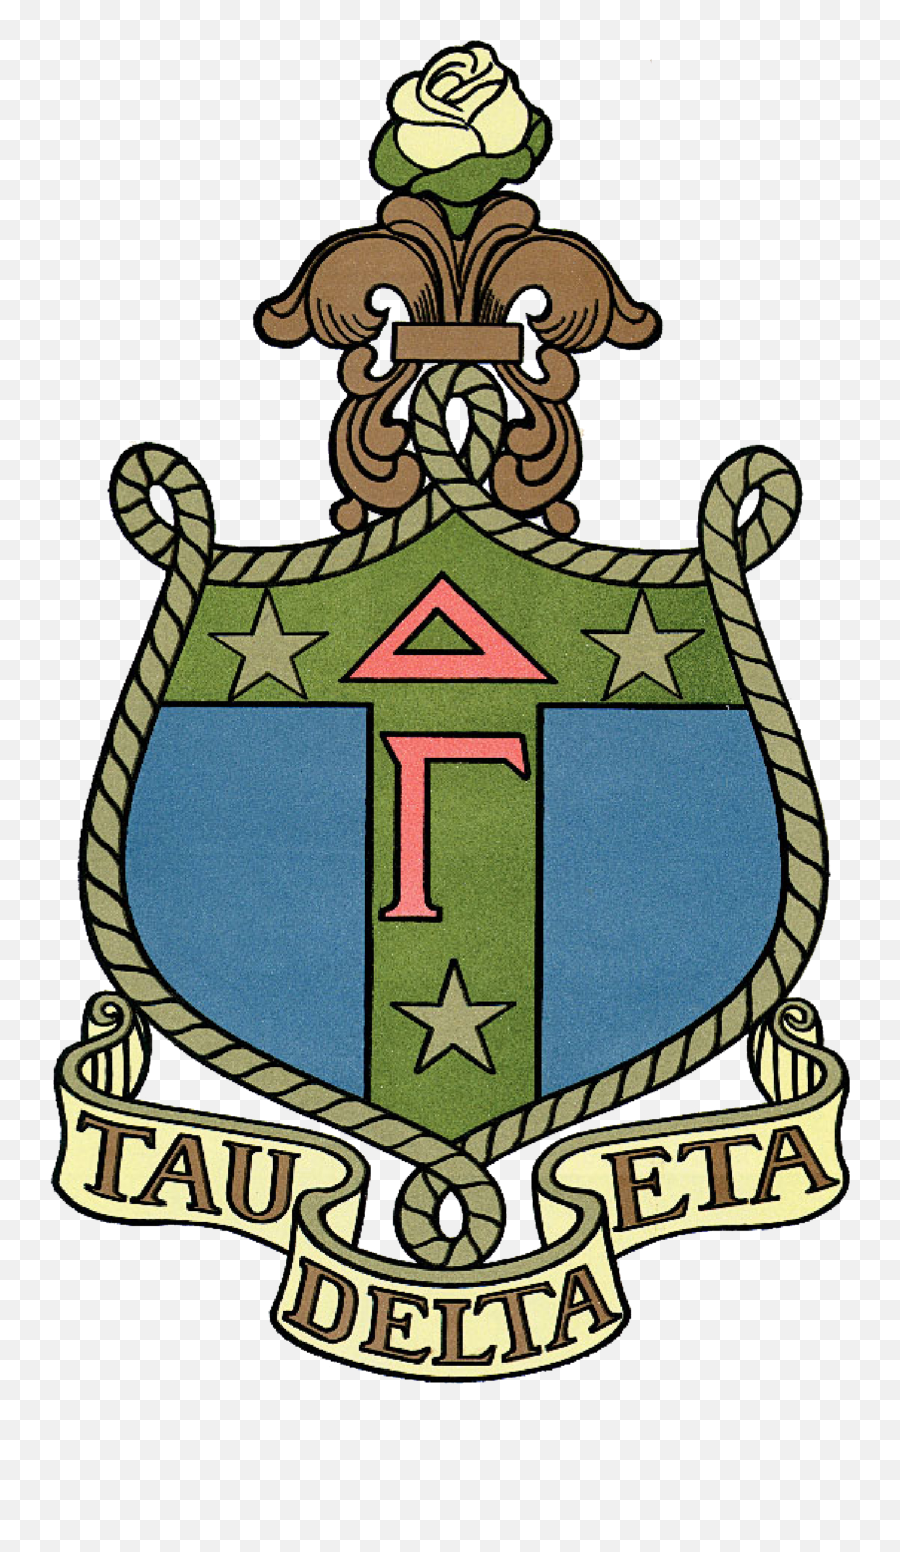 Delta Gamma Fraternity Fsa Illinois - Delta Gamma Crest Png,Gamma Icon